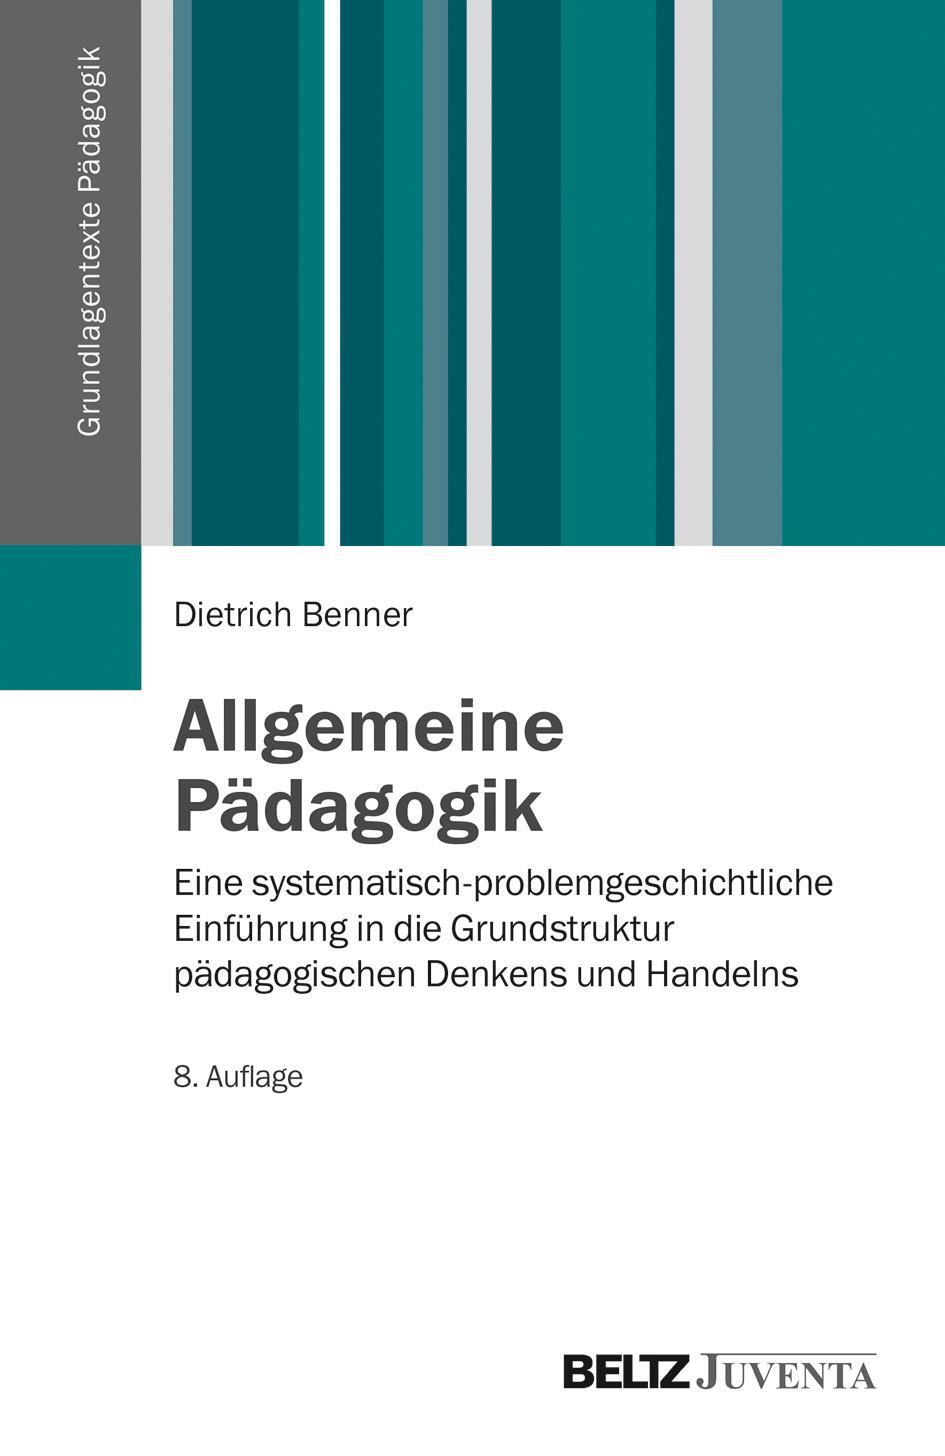 Allgemeine Pädagogik - Benner, Dietrich